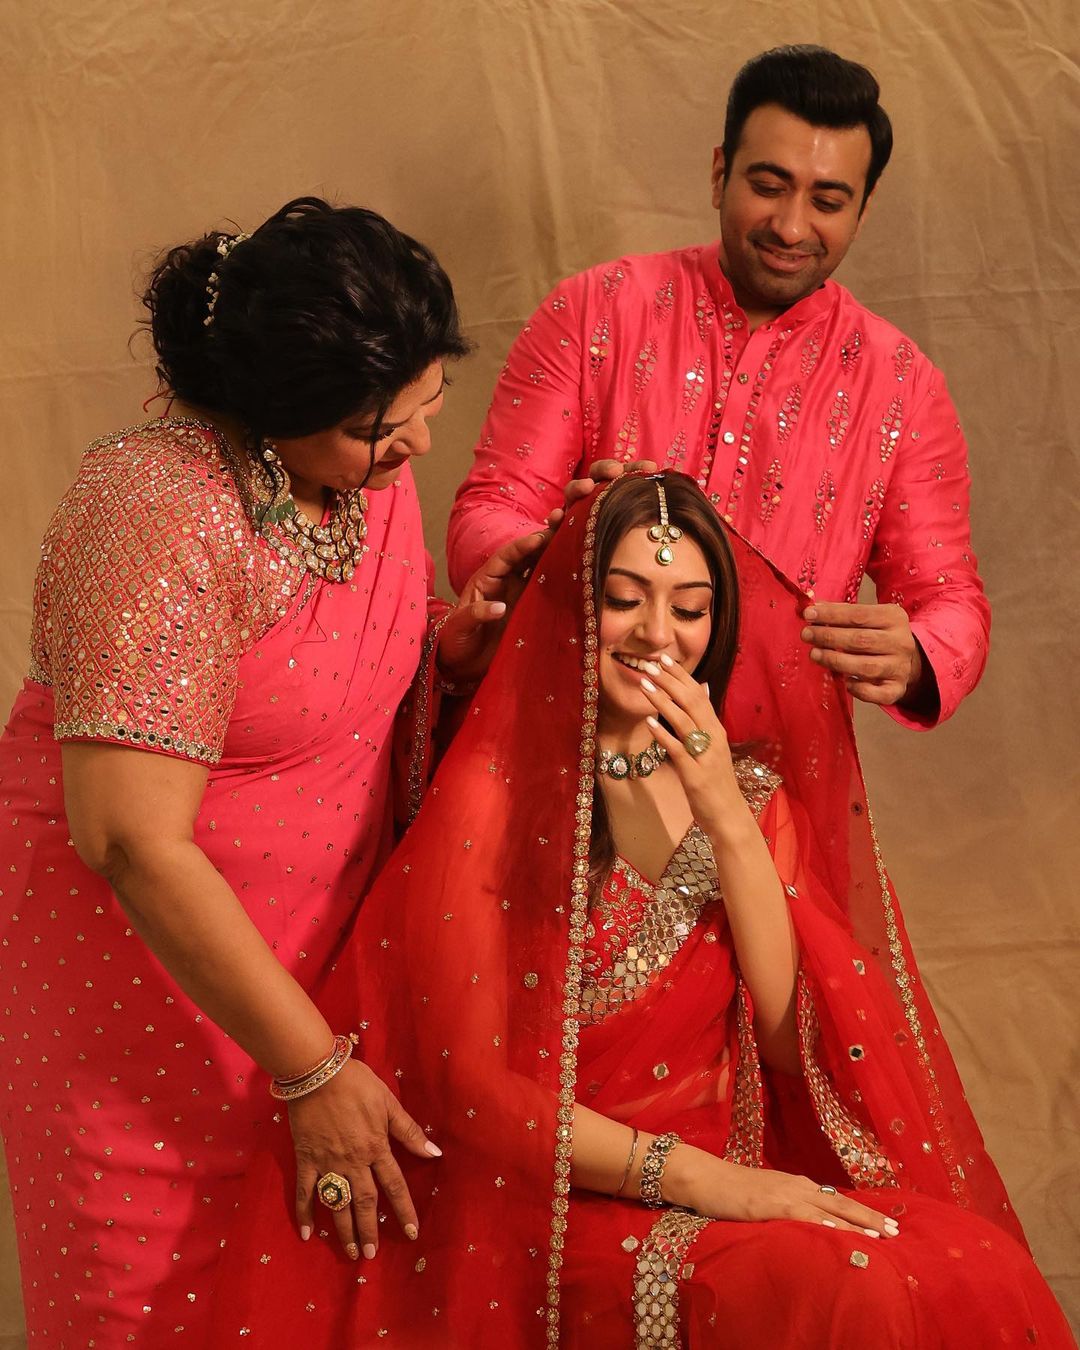  சகோதரர் மற்றும் தாயுடன் வெட்கப்பட்டு சிரிக்கும் நடிகை ஹன்ஷிகா